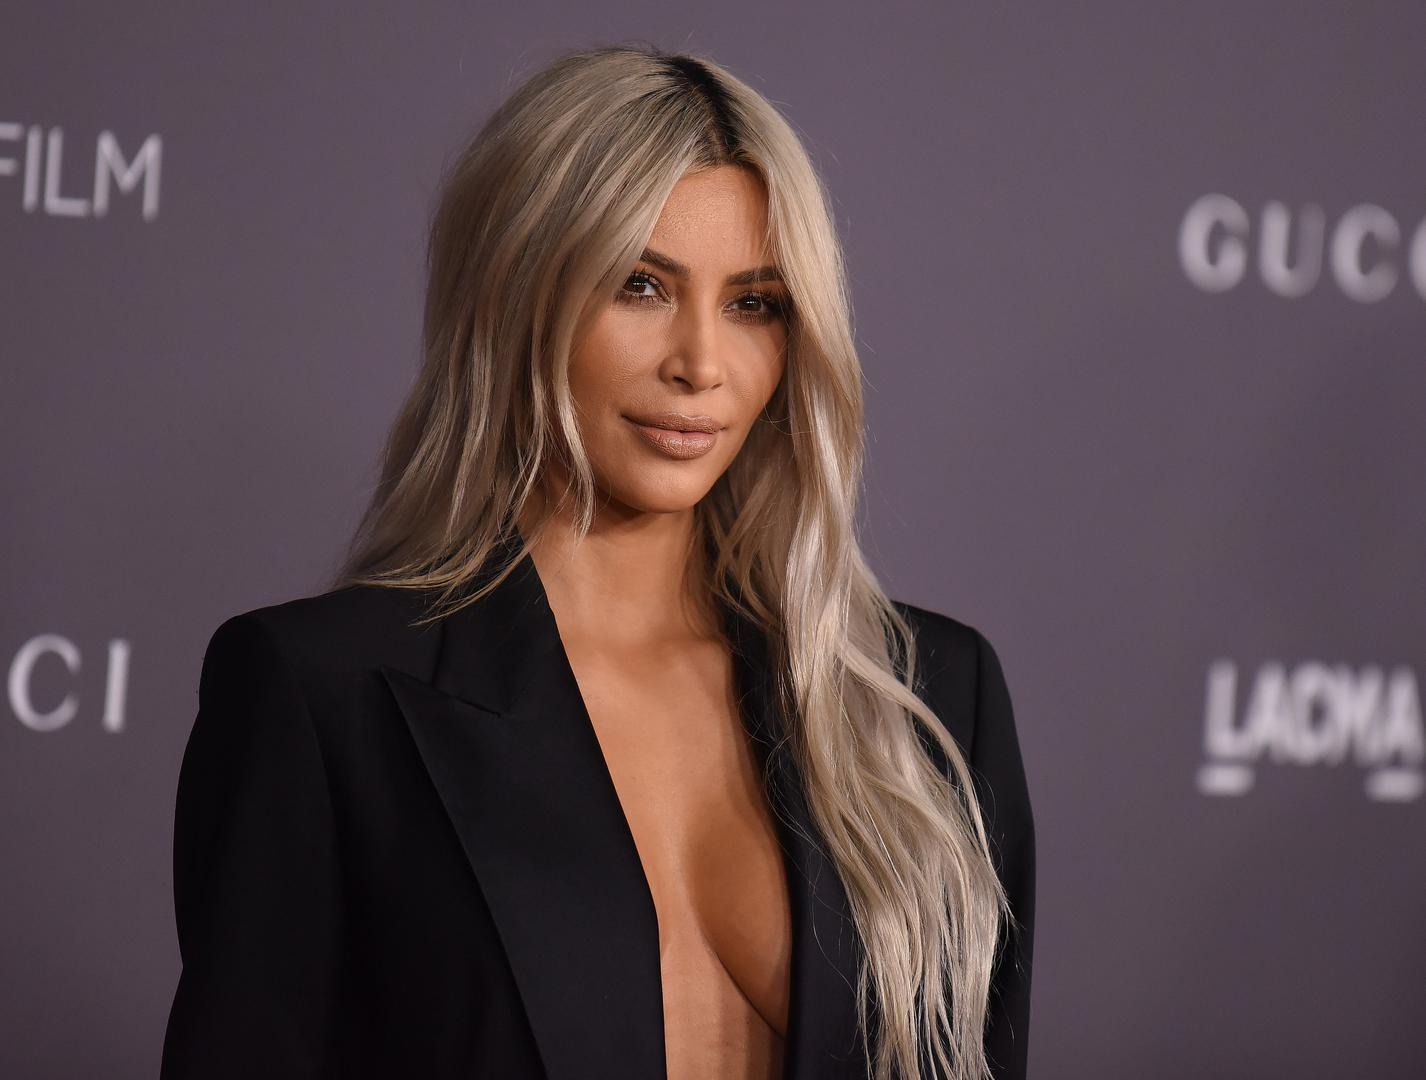 U Muzeju moderne umjetnosti u Los Angelesu održan je event Film Gala, na koji je došla i Kim Kardashian i opet je uspjela privući pažnju. 